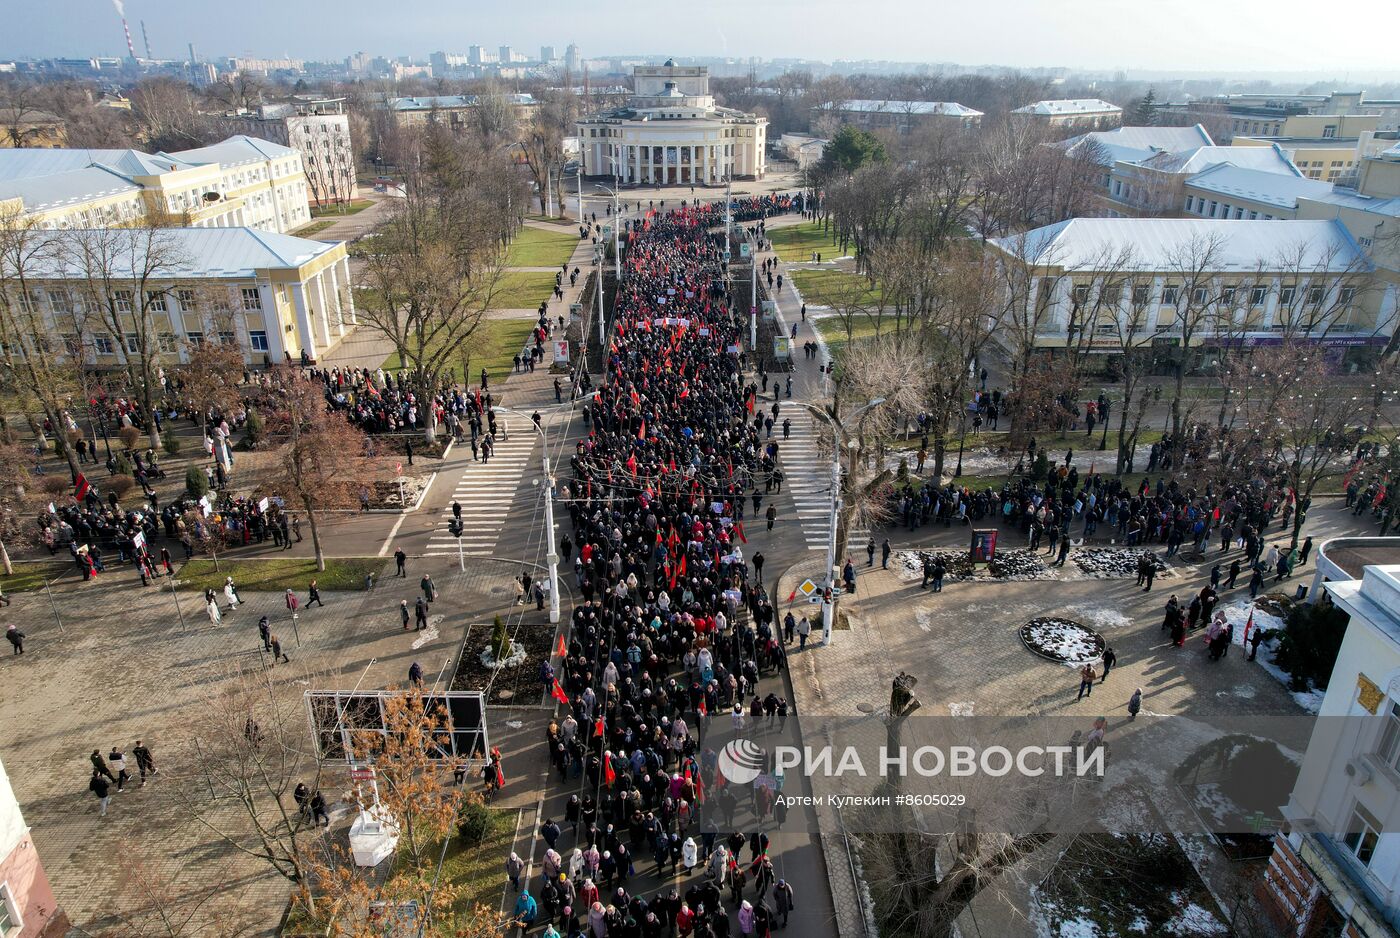 Акция протеста в Тирасполе против экономического давления со стороны Молдовы